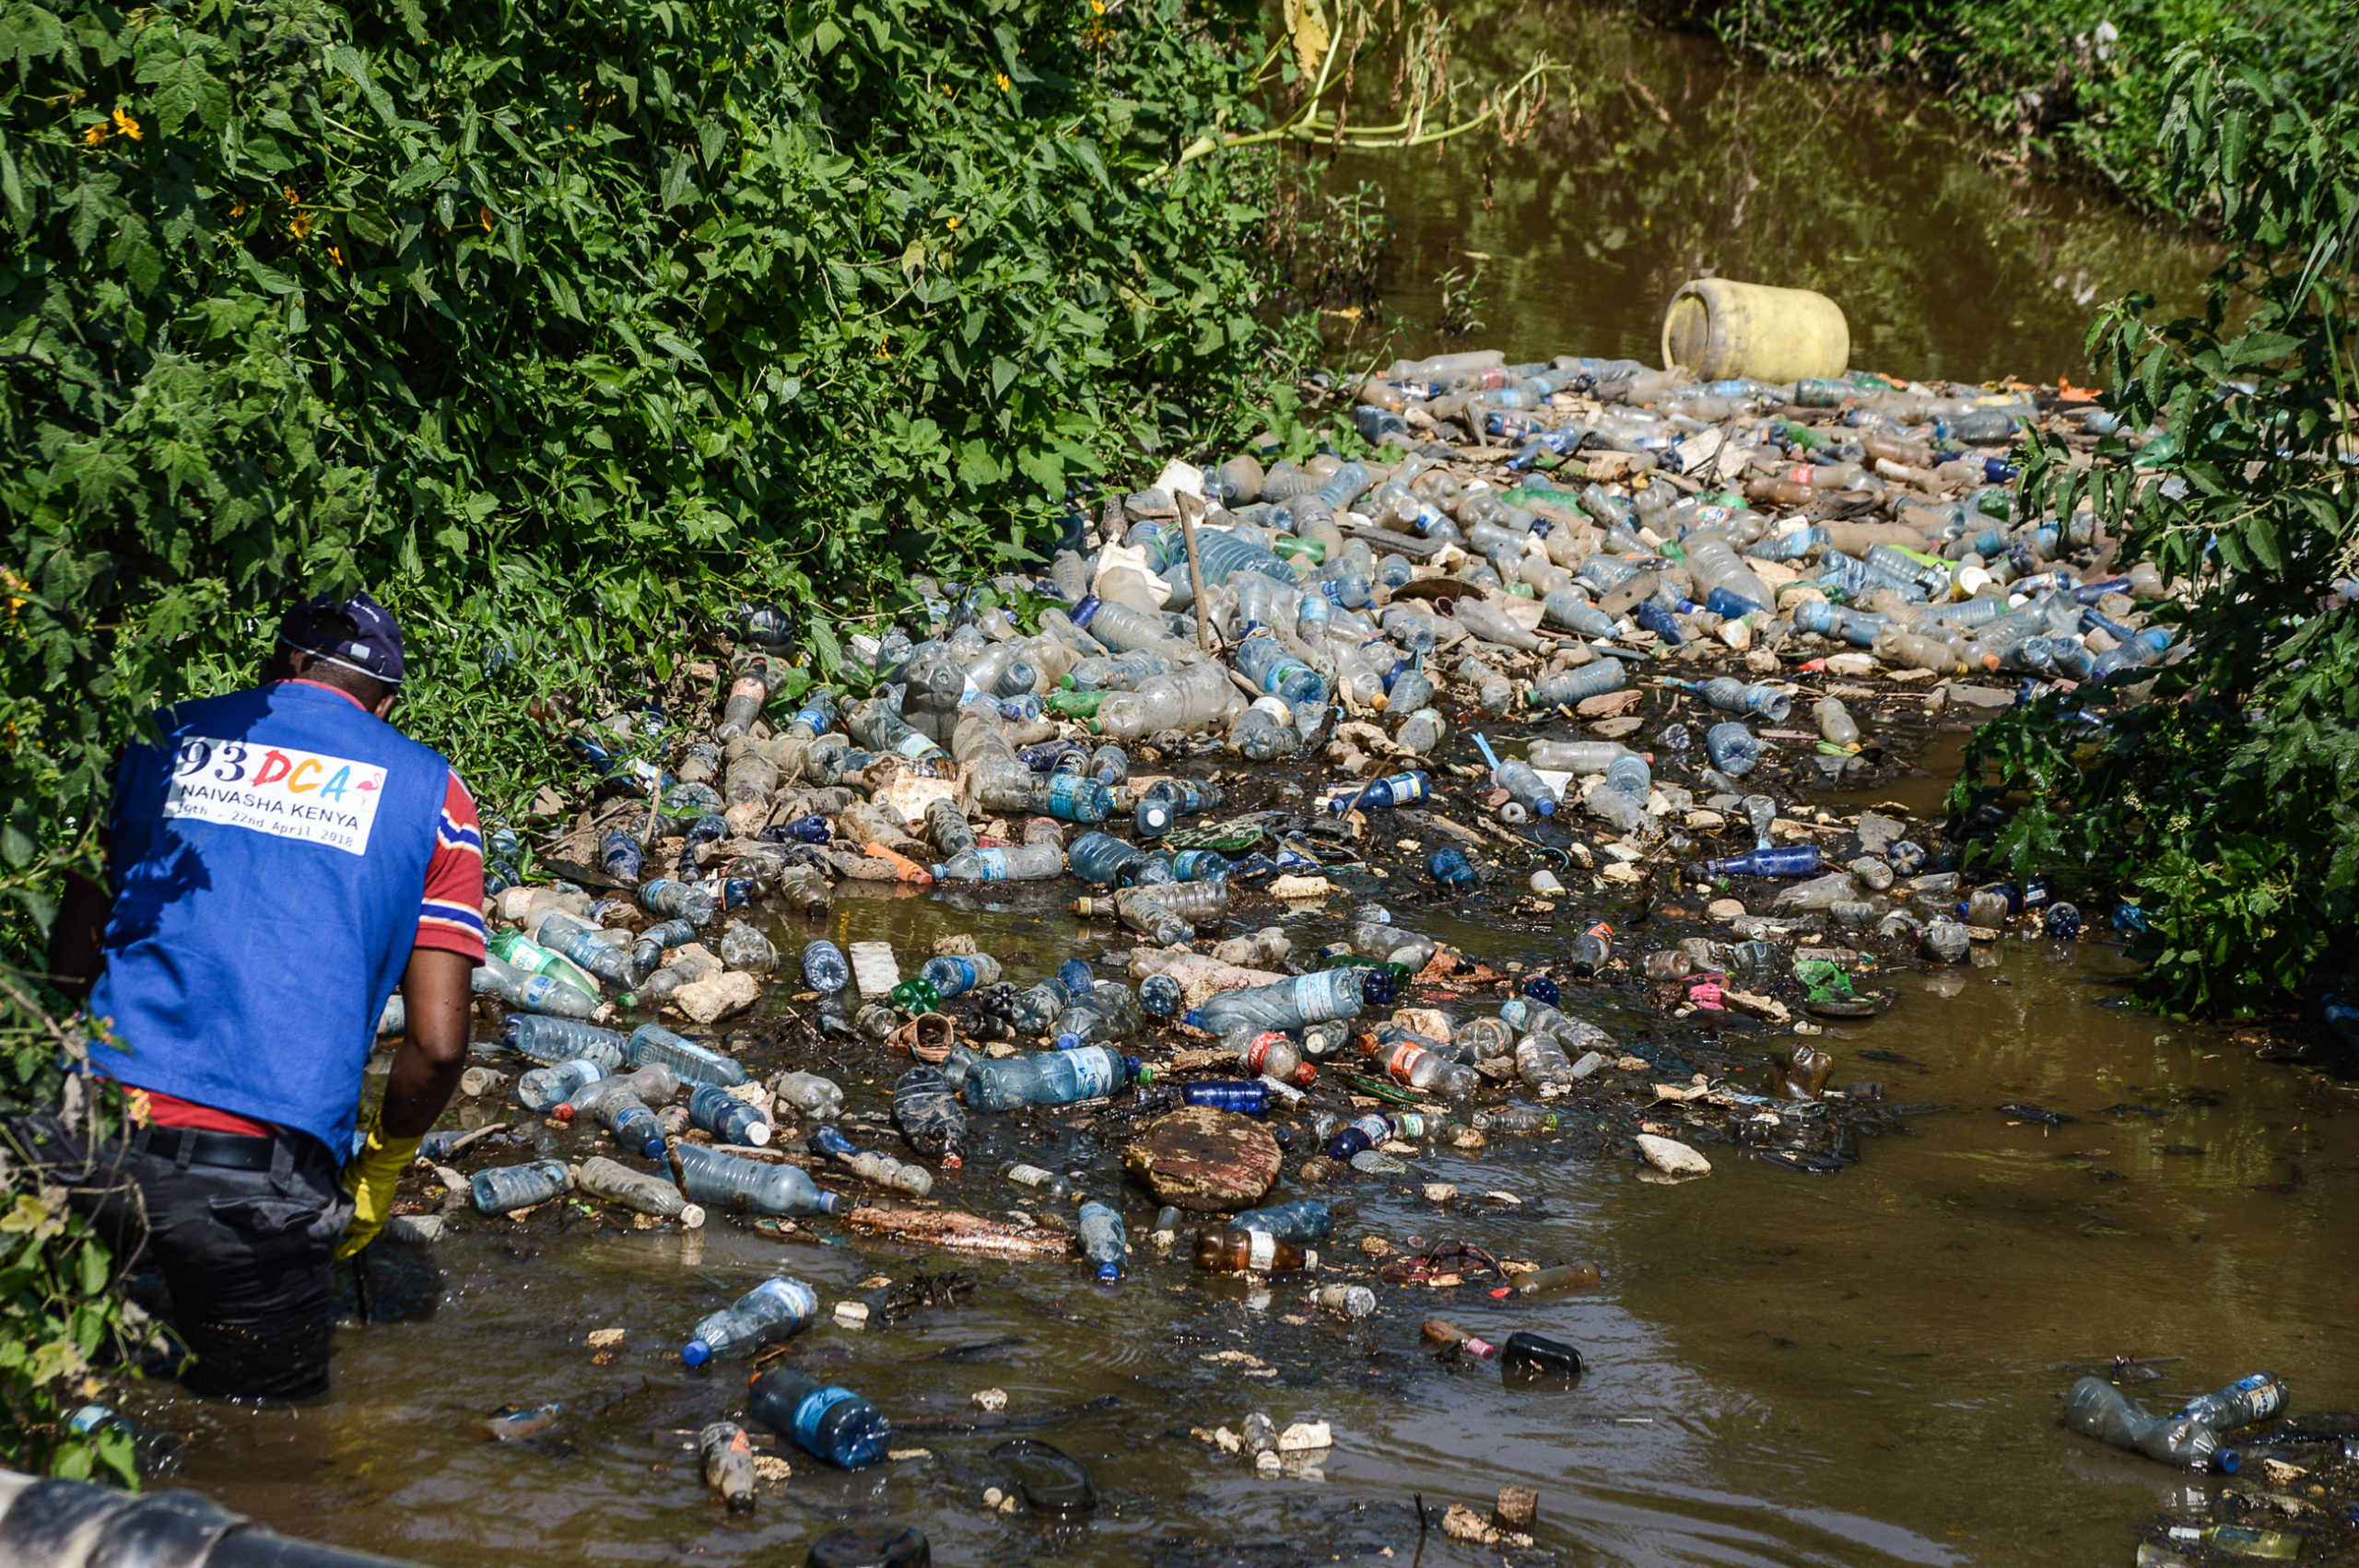 El voluntario Joab Okello retirando plásticos atascados en el río Njoro, en Nakuru, Kenia.
Fotografía por James Wakibia.